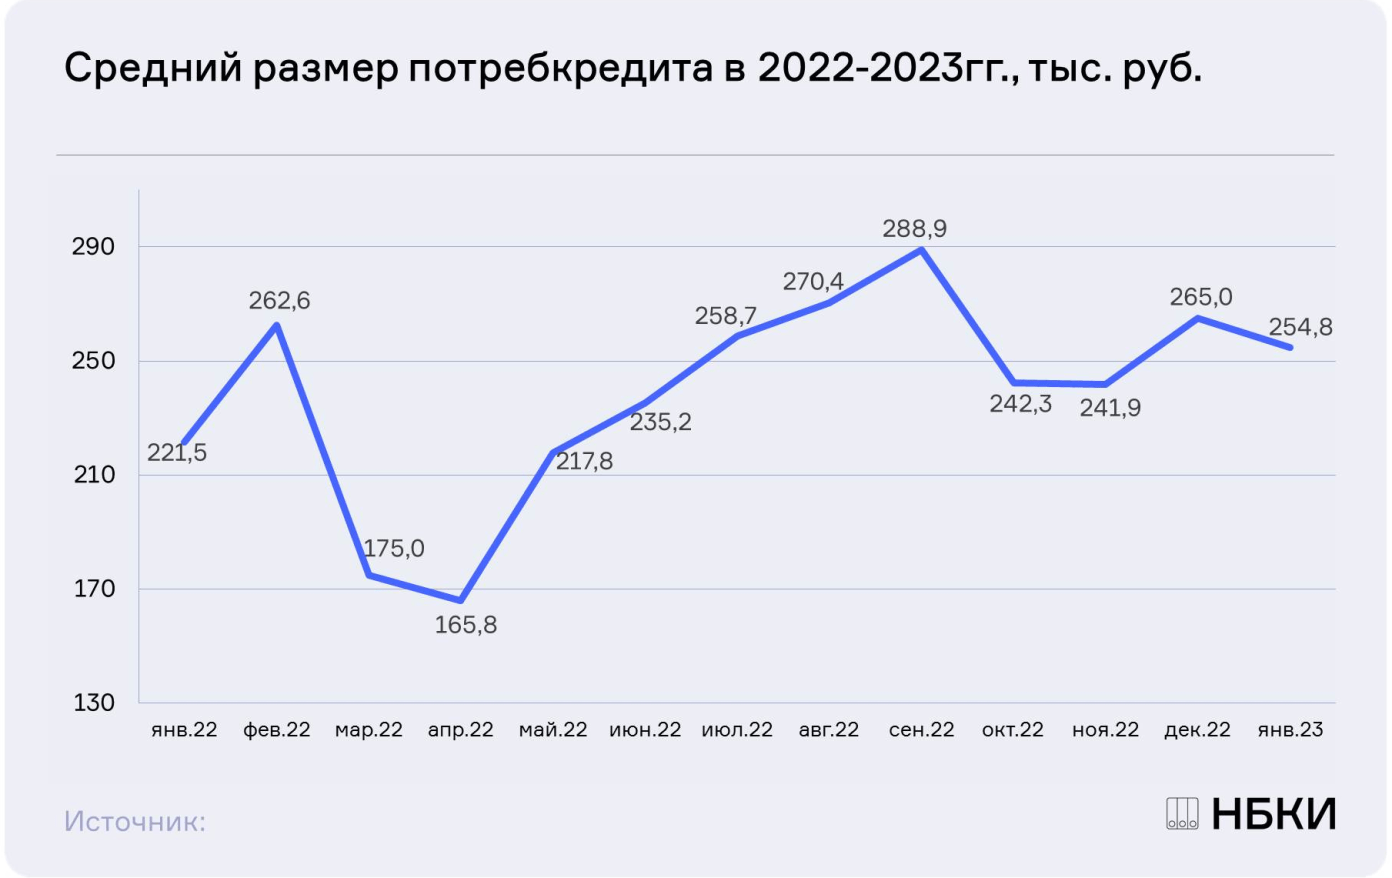 НБКИ: в январе средний размер потребительского кредита составил 254,8 тыс. руб.